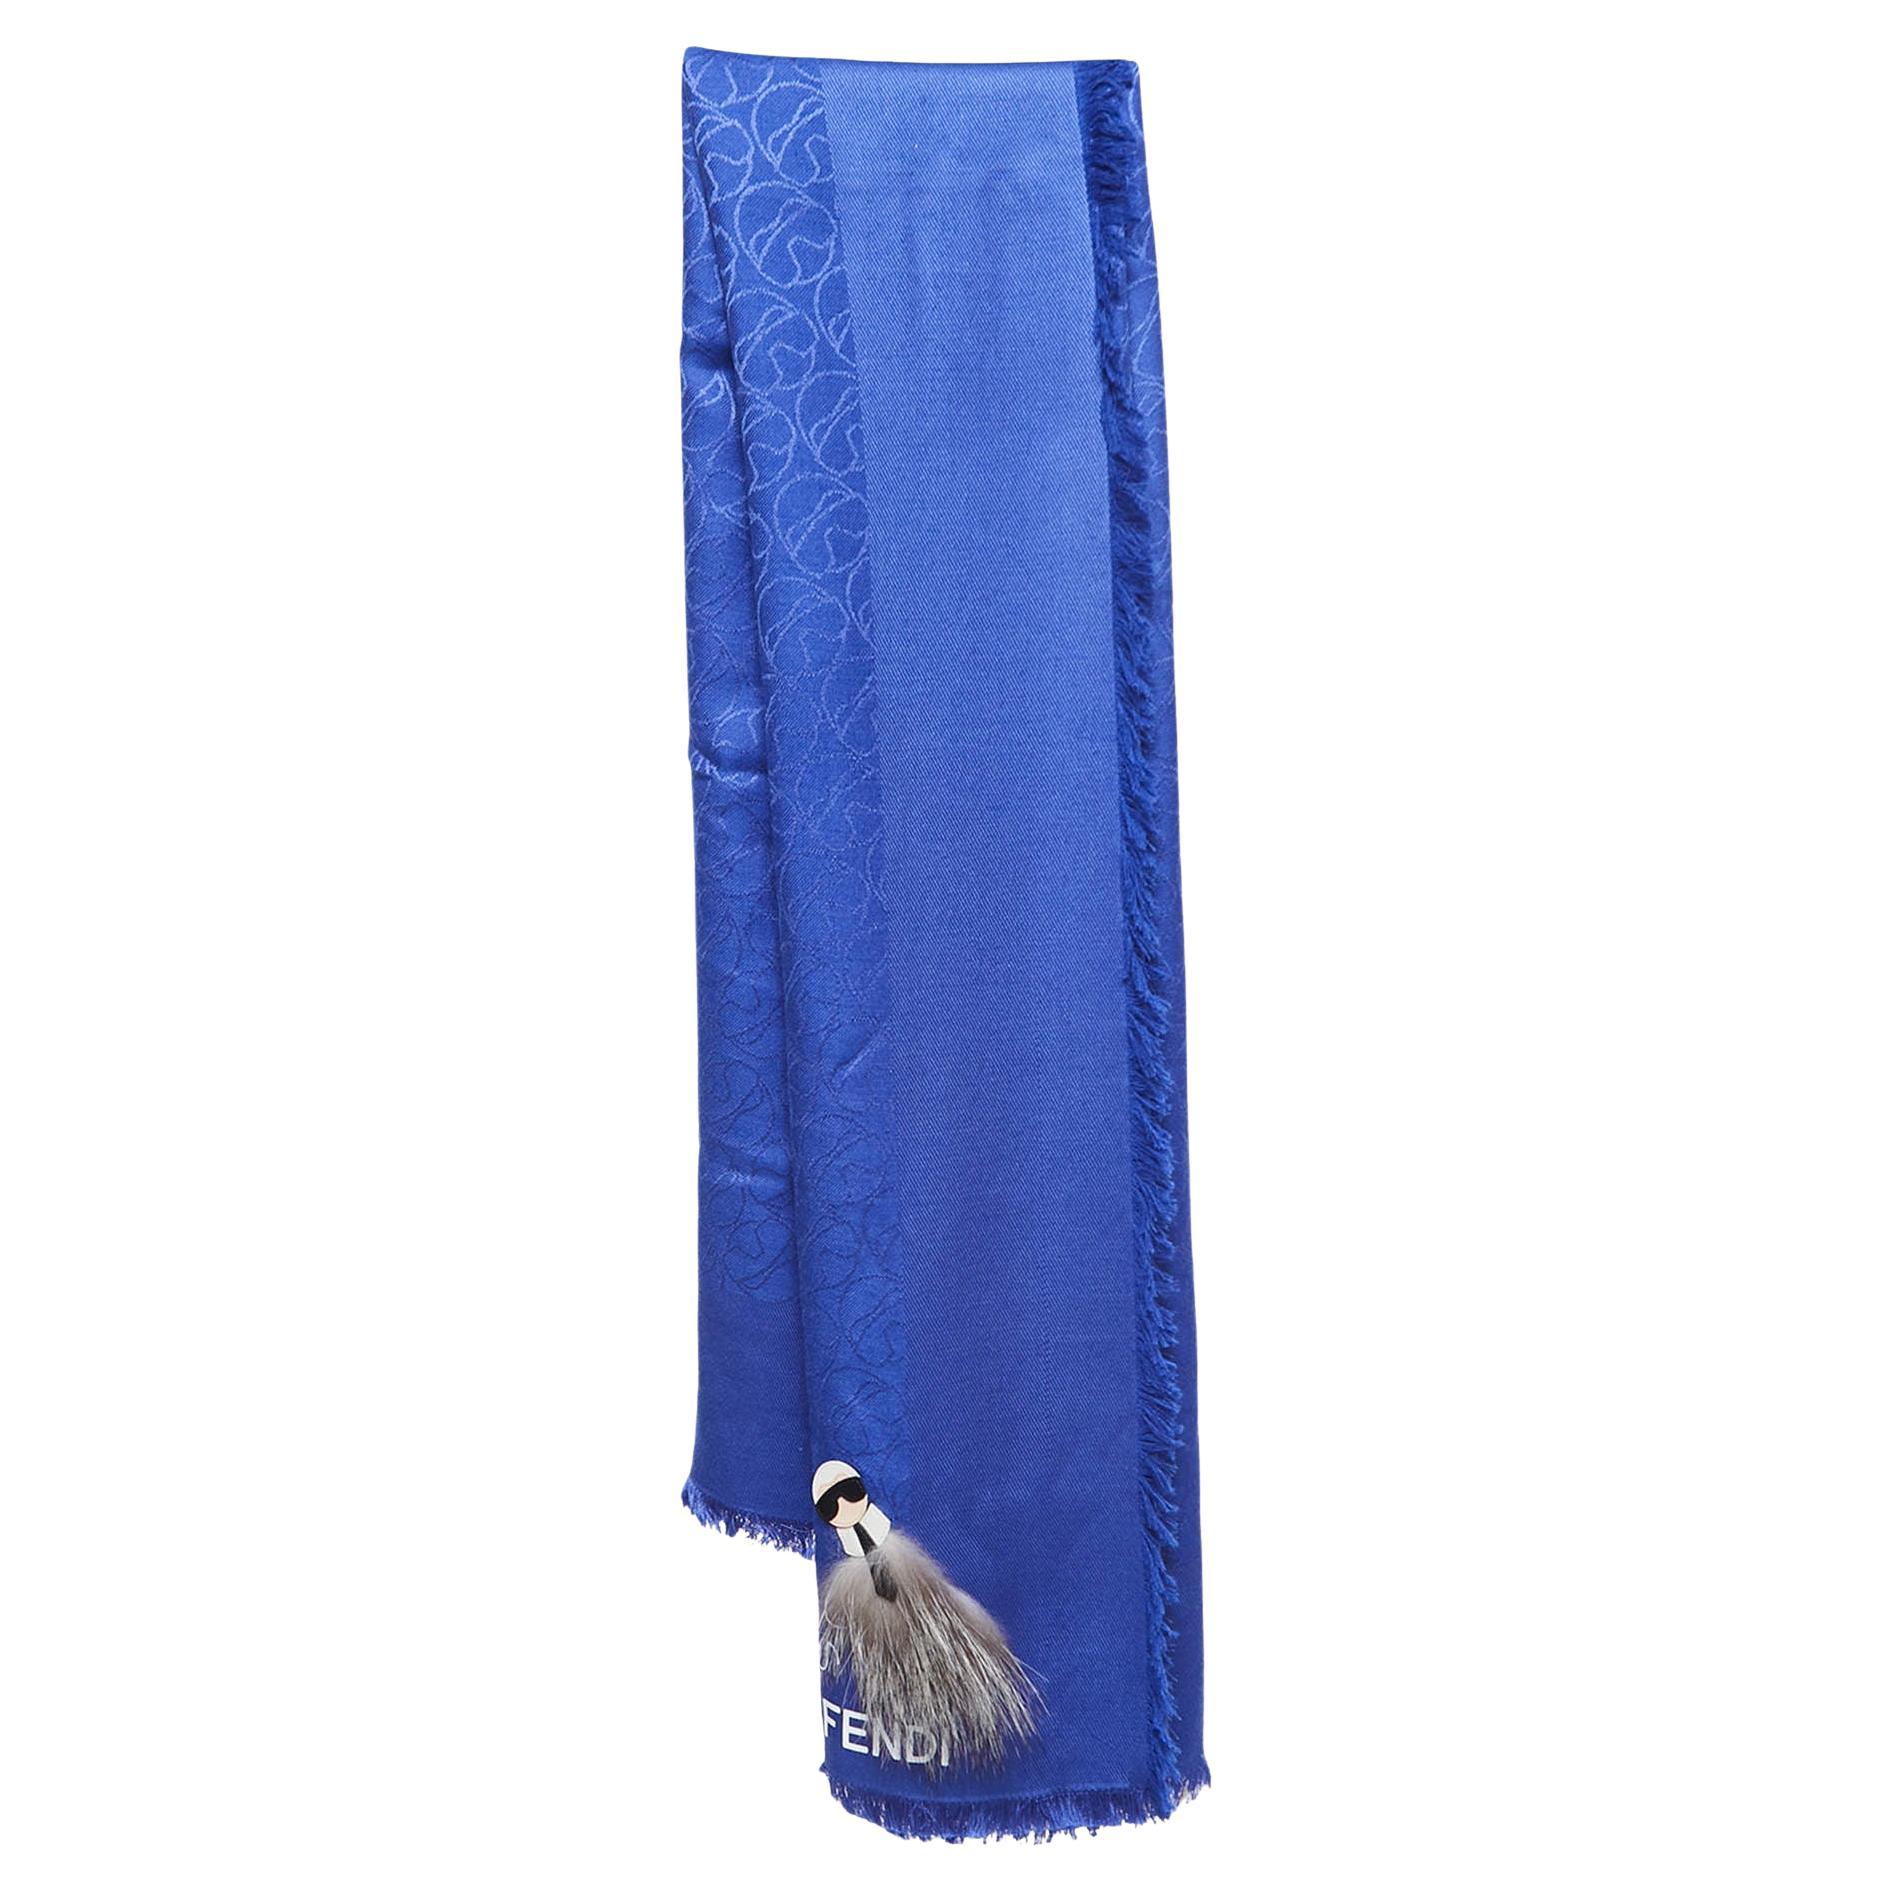 Châle en soie et laine Karlito de Fendi, bleu, avec détails appliqués